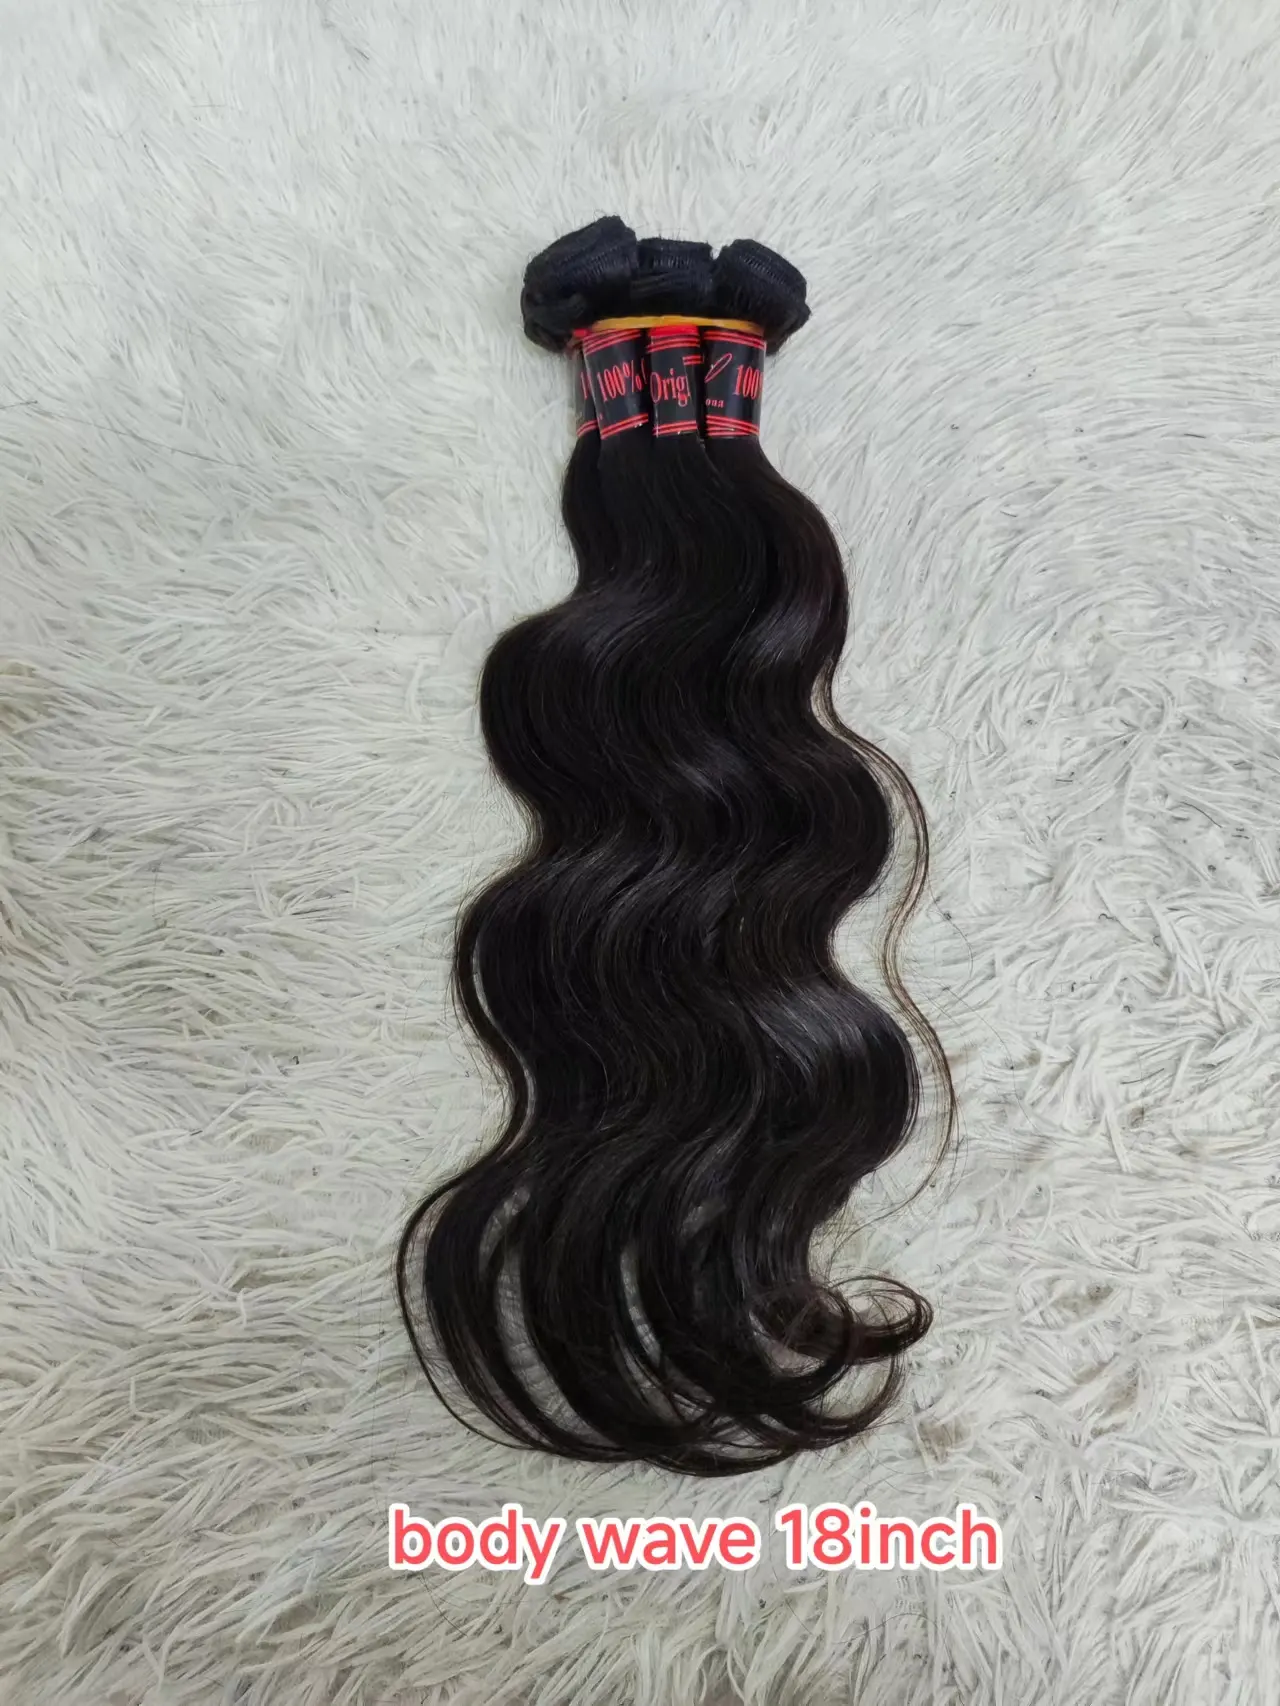 Letsfly Goedkope 18Inch Zijdeachtige Rechte Body Wave Hair Extensions Groothandel Natuurlijk Haar Braziliaanse Remy Haarbundels Snelle Verzending